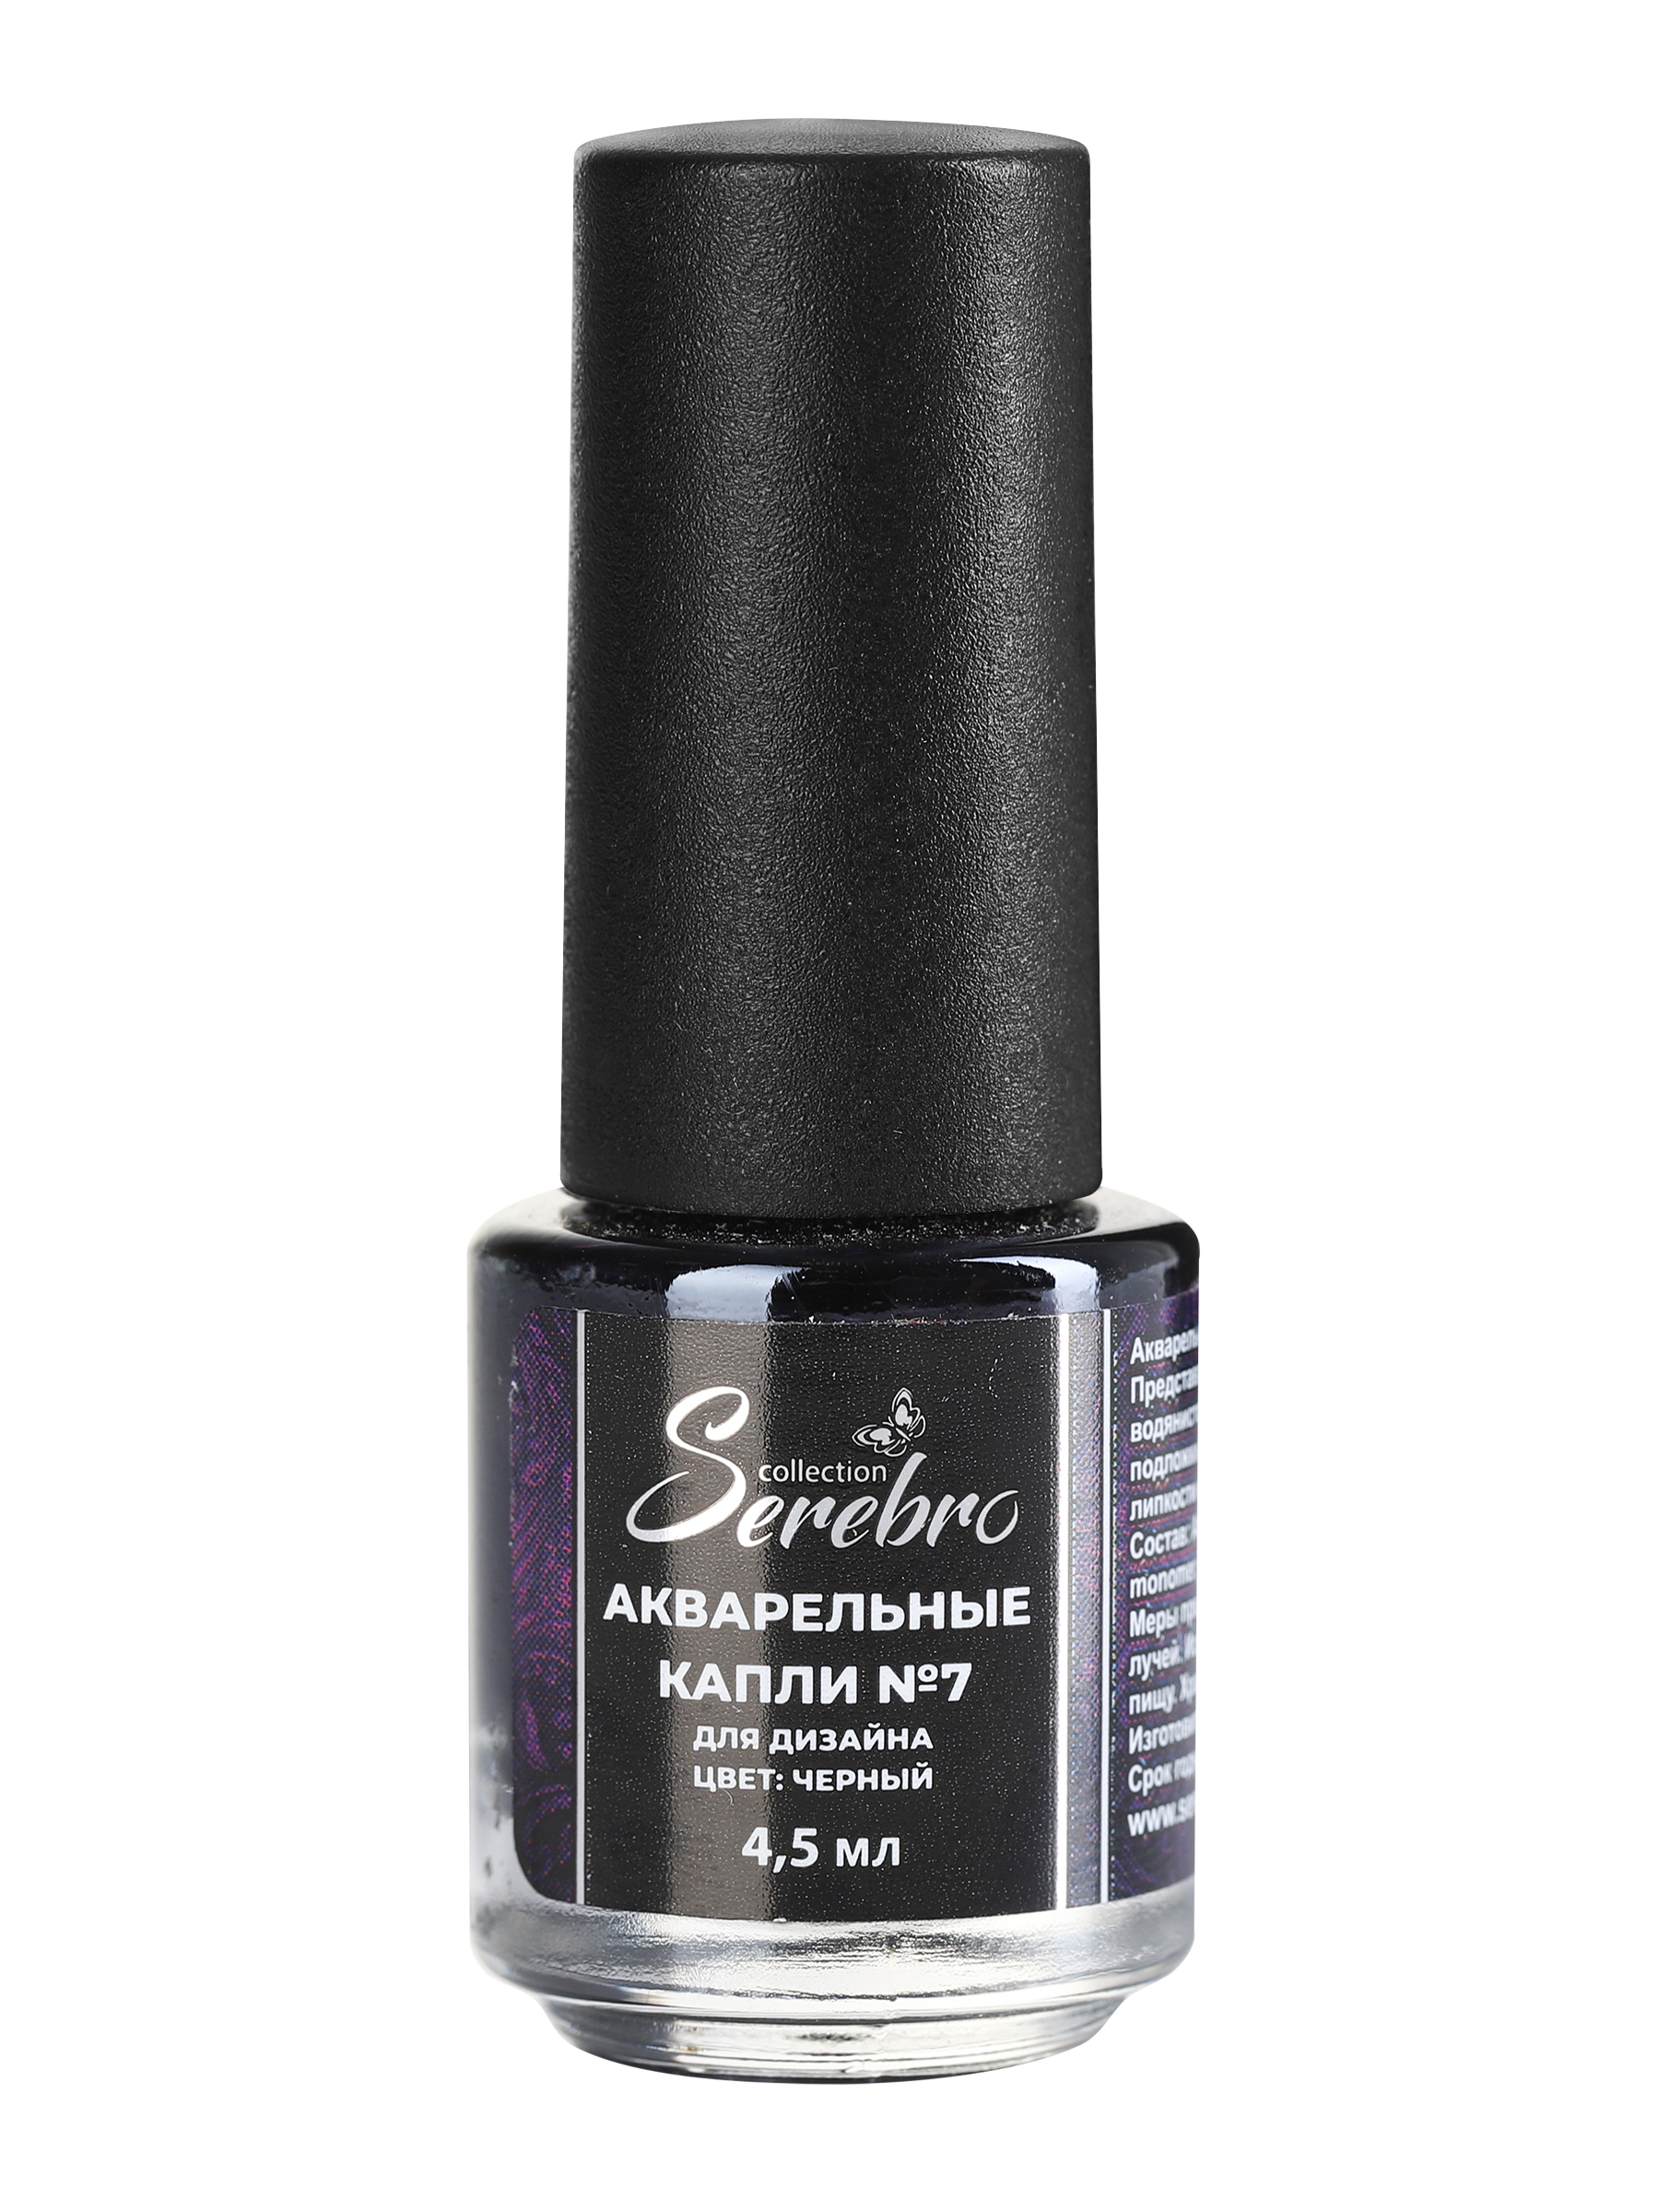 Акварель для дизайна ногтей Serebro, цветная краска для декора маникюра, черная, 4,5 мл роспись по гипсу шкатулка очек краска 6 цв по 2 5 мл кисть